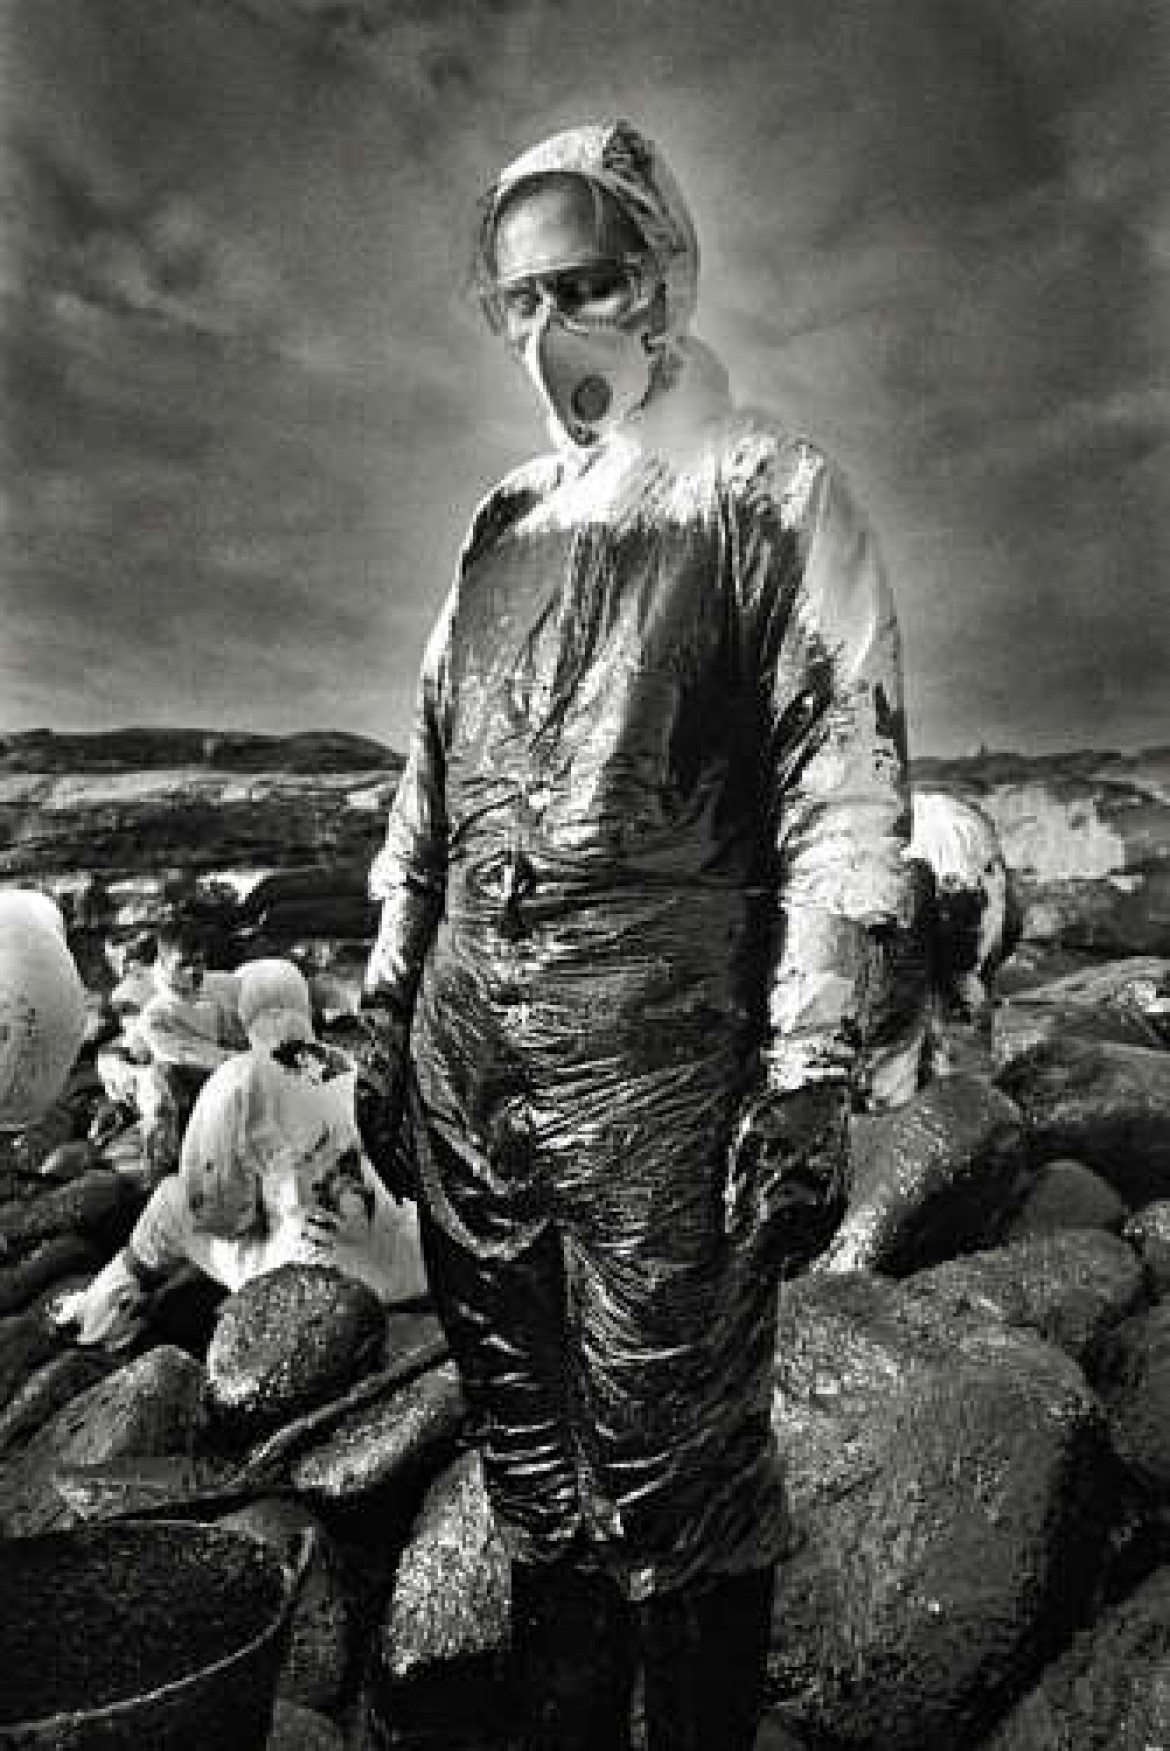 &#8220;Przyroda i środowisko&#8221; 2. nagroda, fot. Carlos Spottorno, Hiszpania. Ochotnik przy usuwaniu rozlanej ropy.